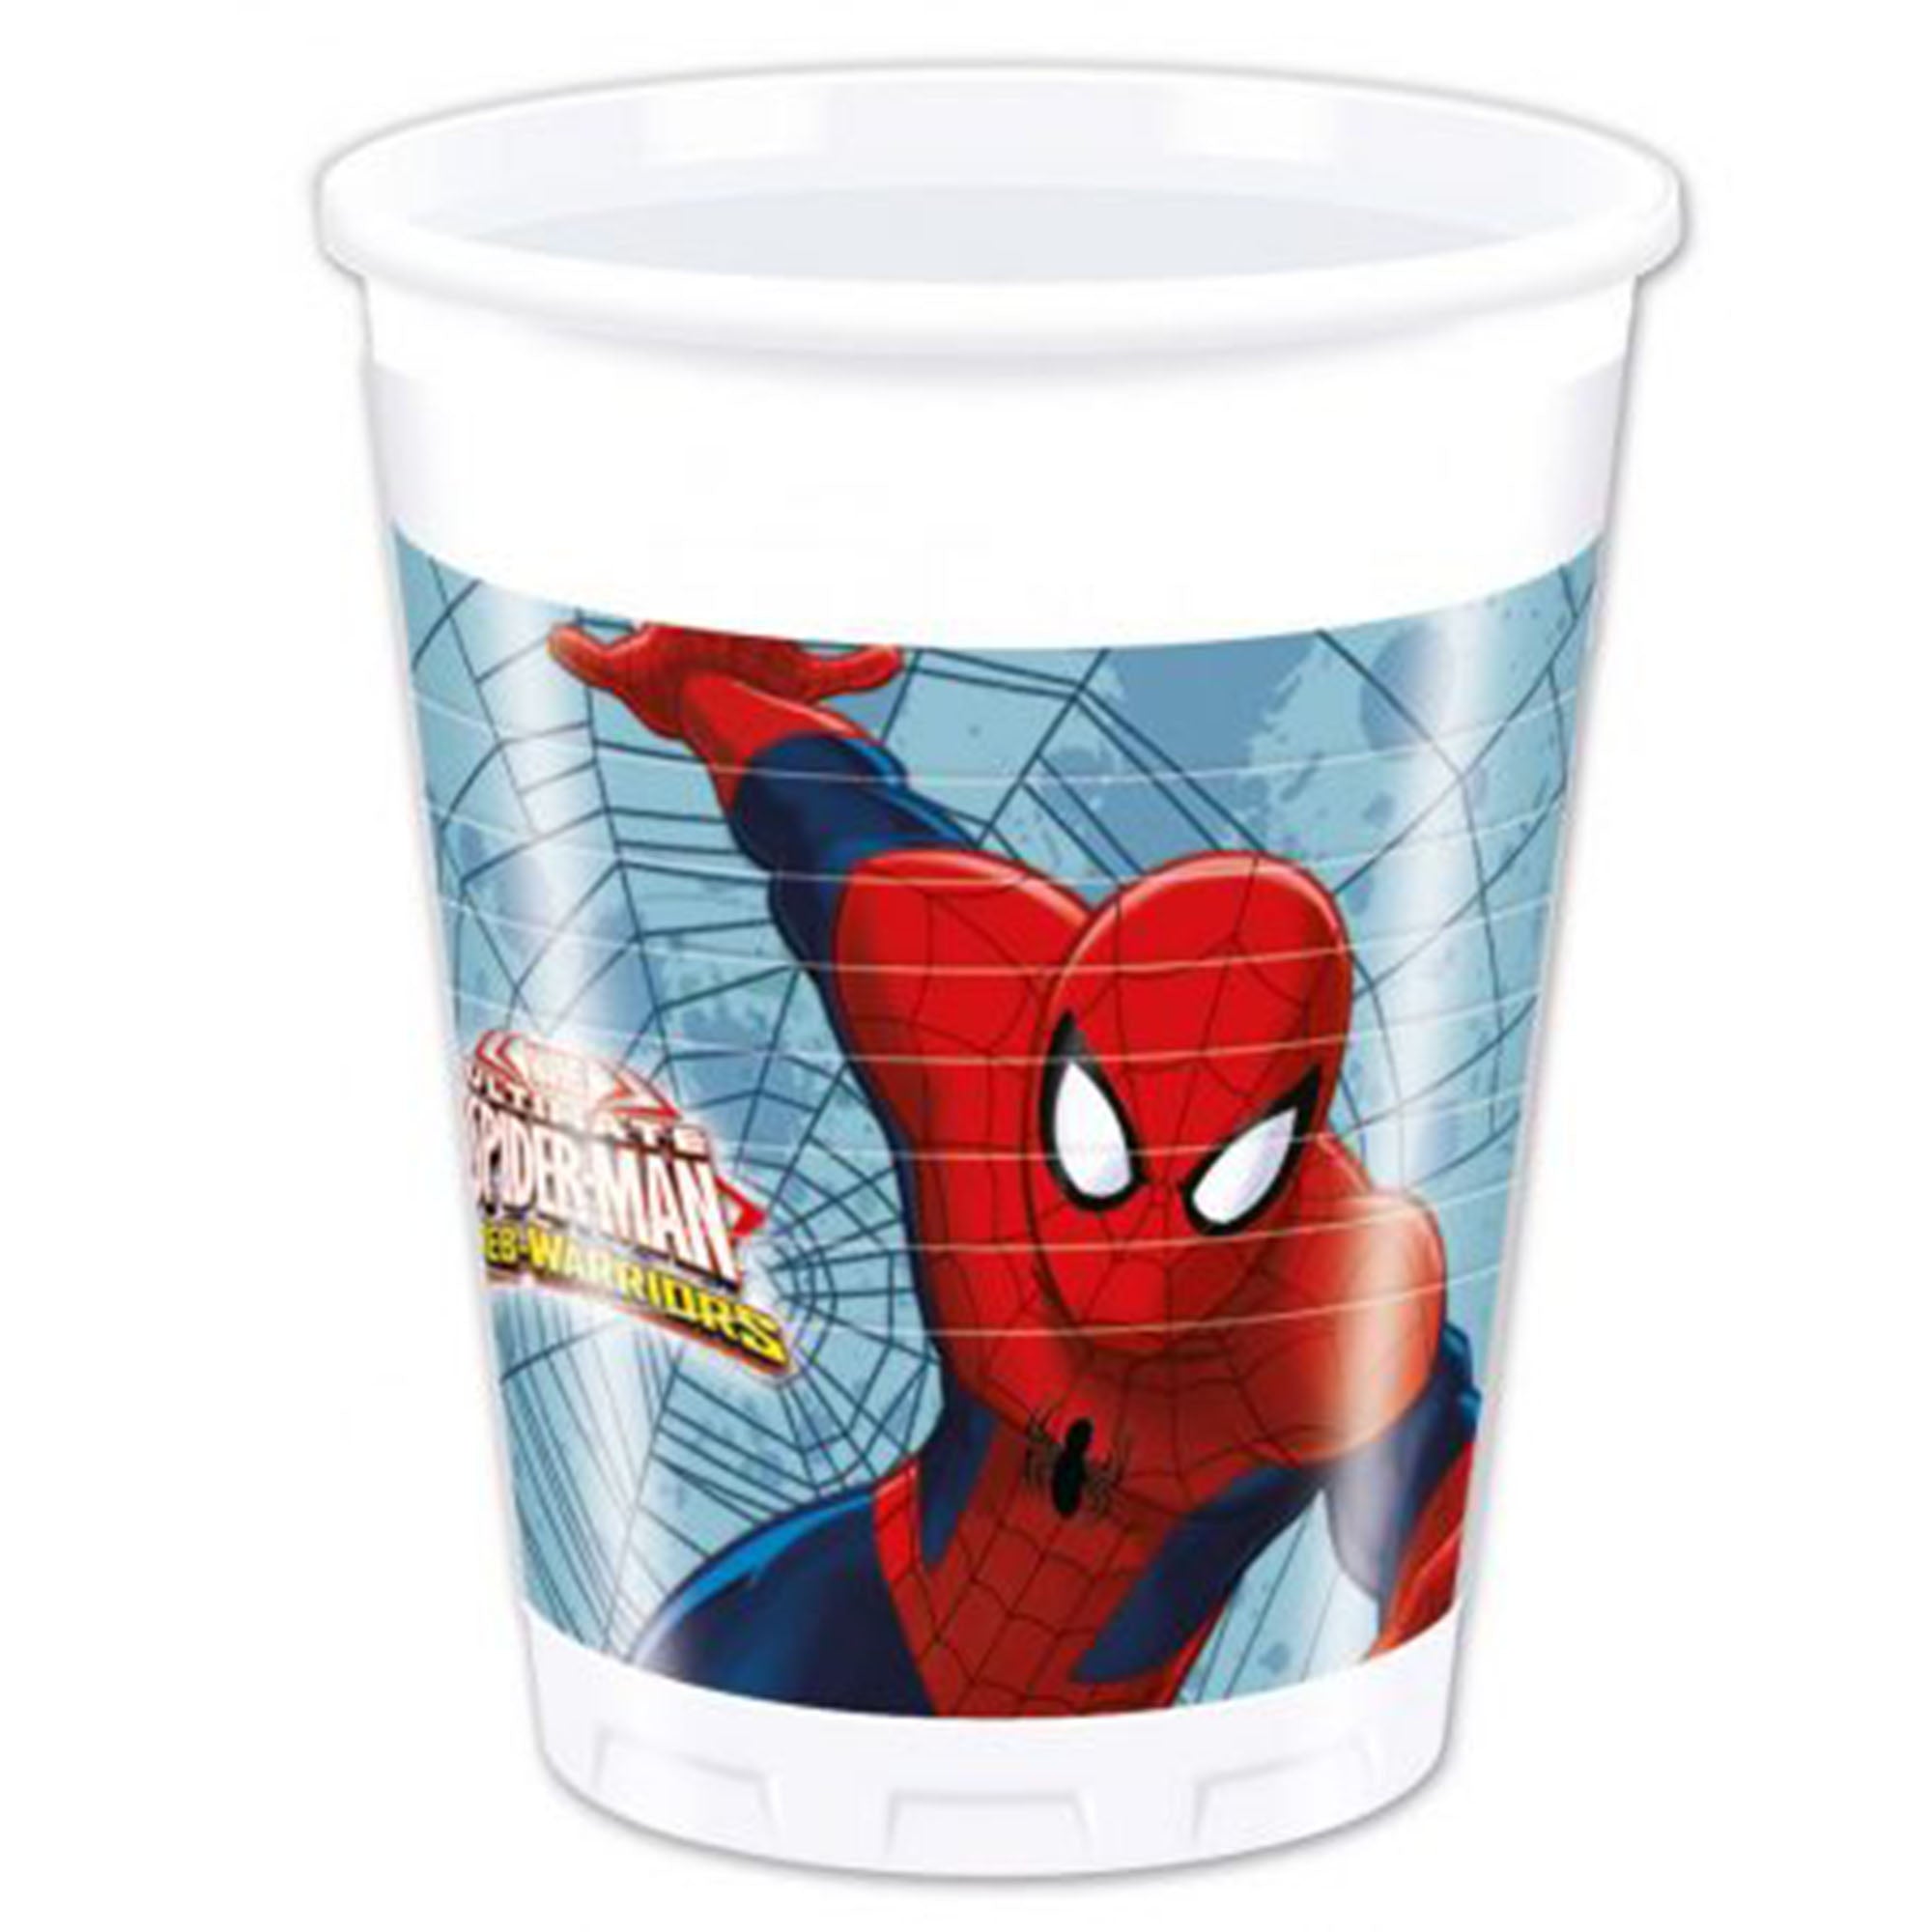 Kit party Marvel Spiderman 24 persone bicchieri piatti tovaglia tovaglioli 1394